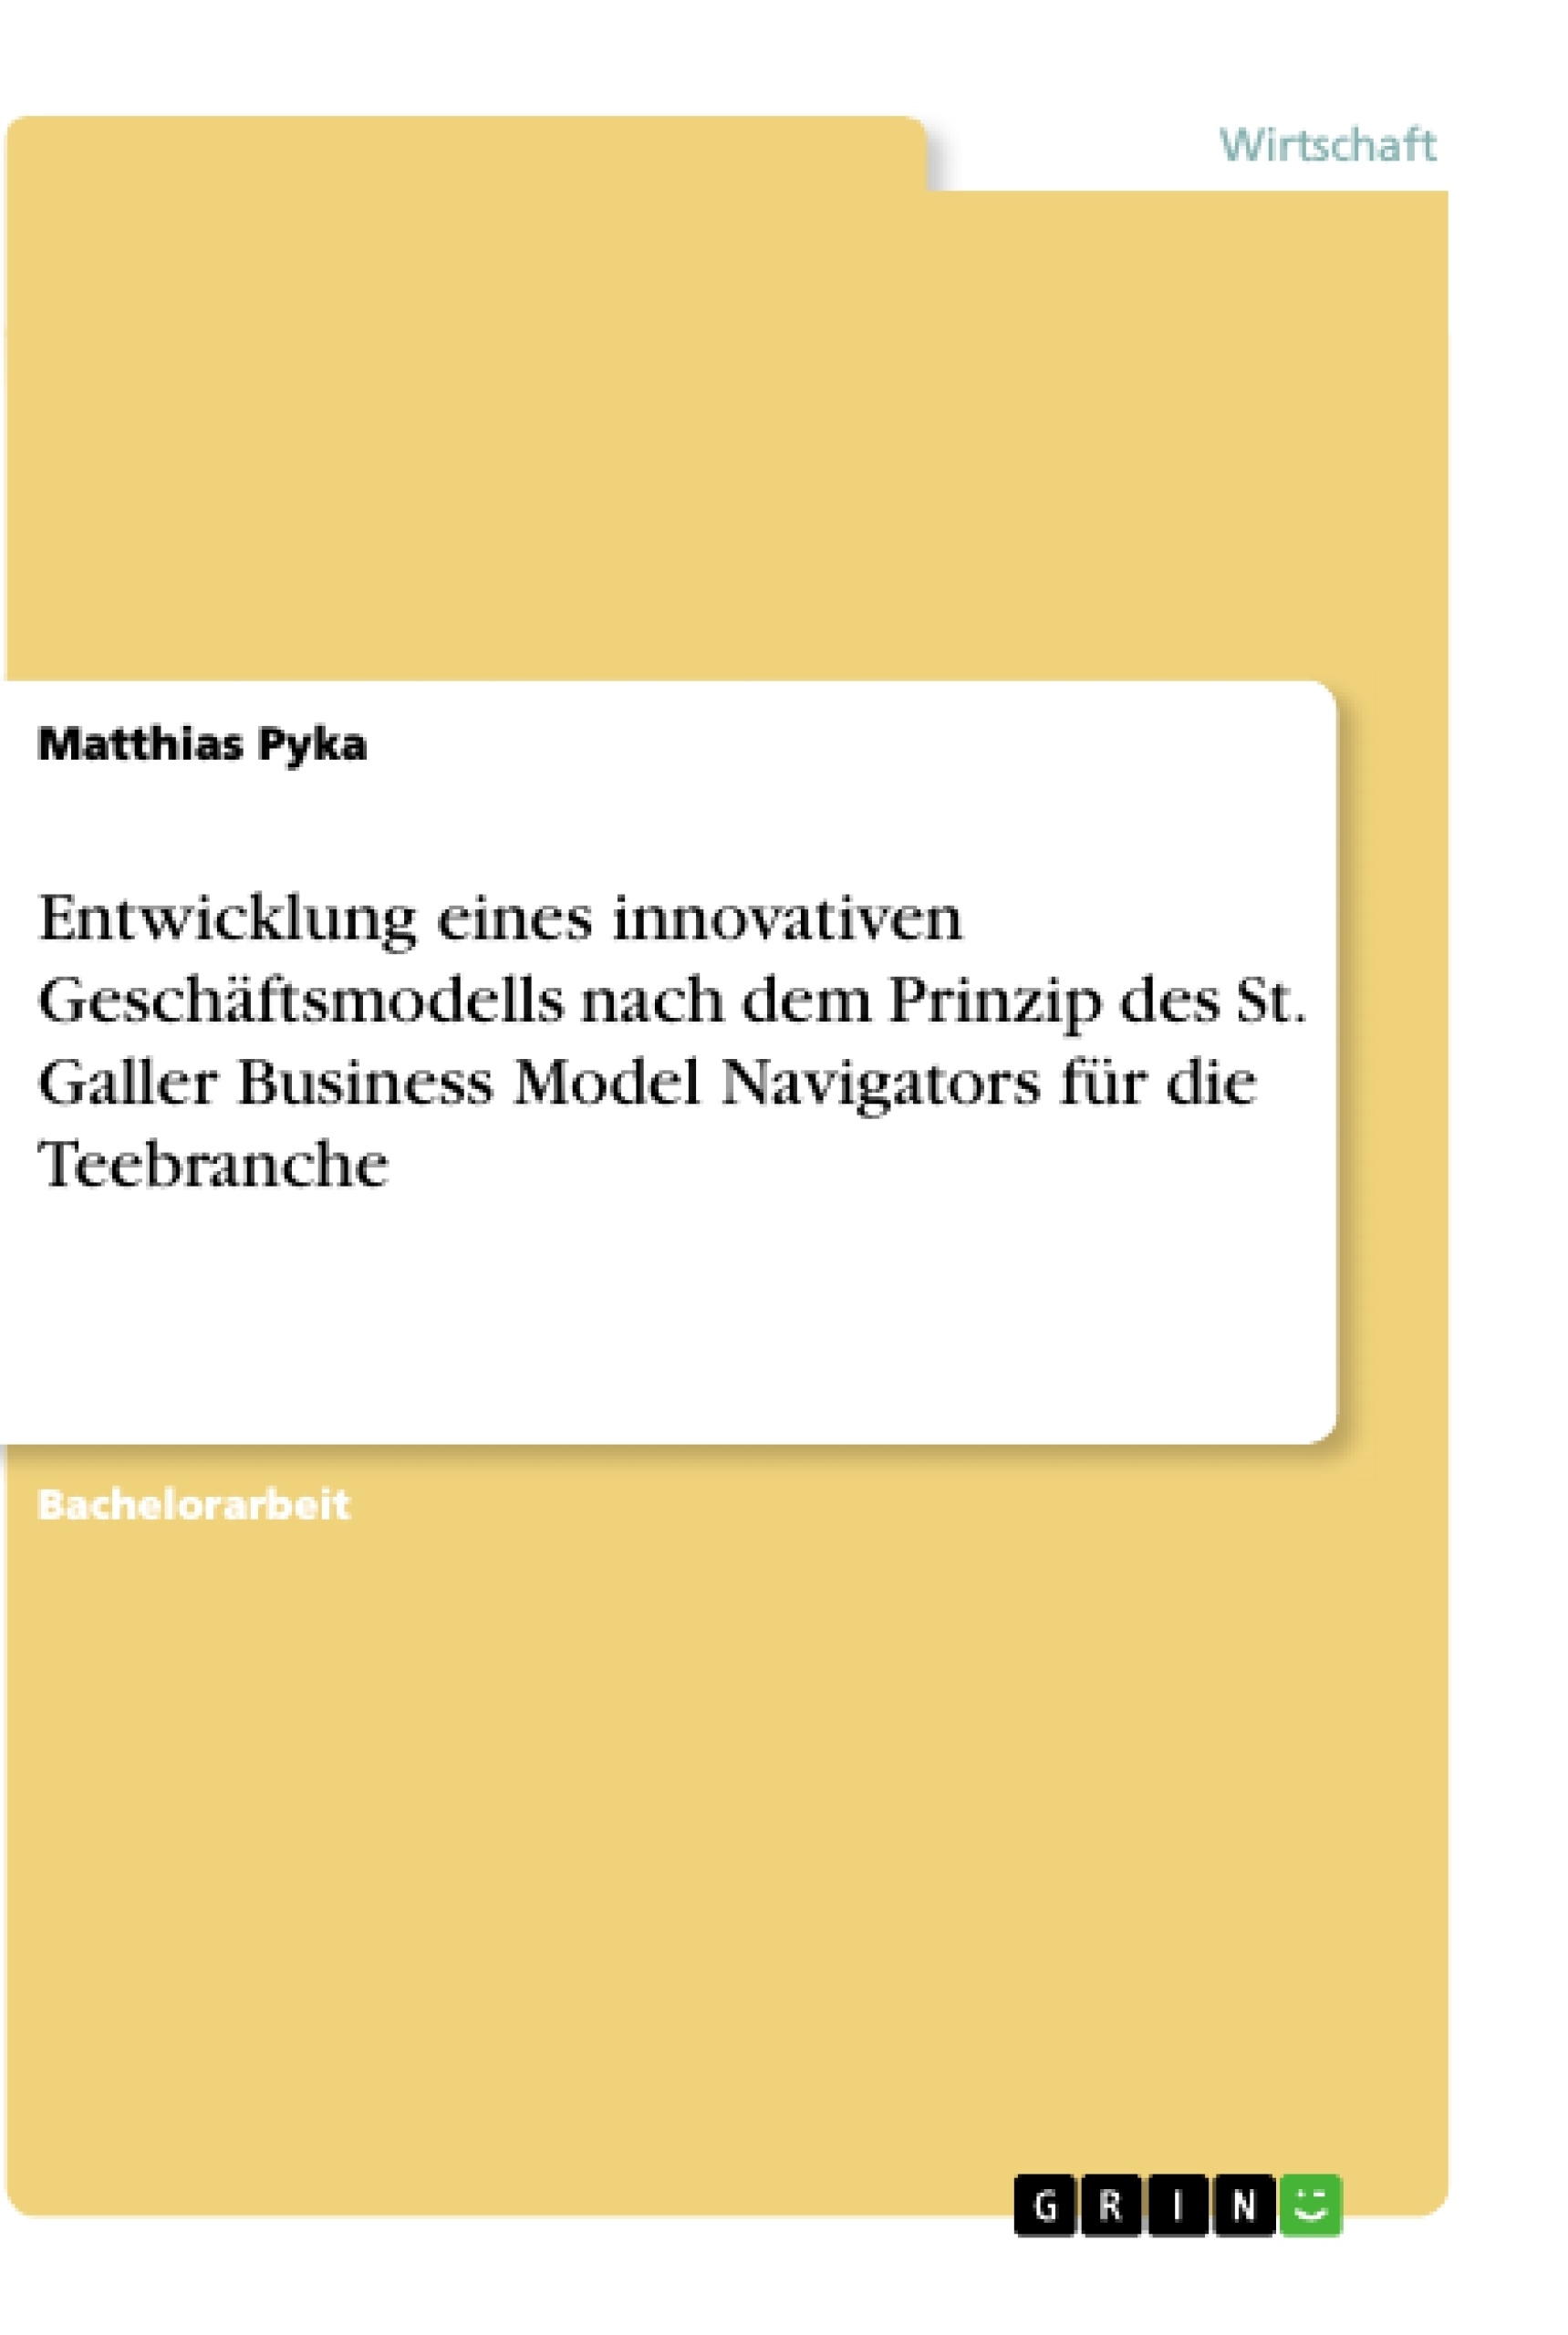 Título: Entwicklung eines innovativen Geschäftsmodells nach dem Prinzip des St. Galler Business Model Navigators für die Teebranche